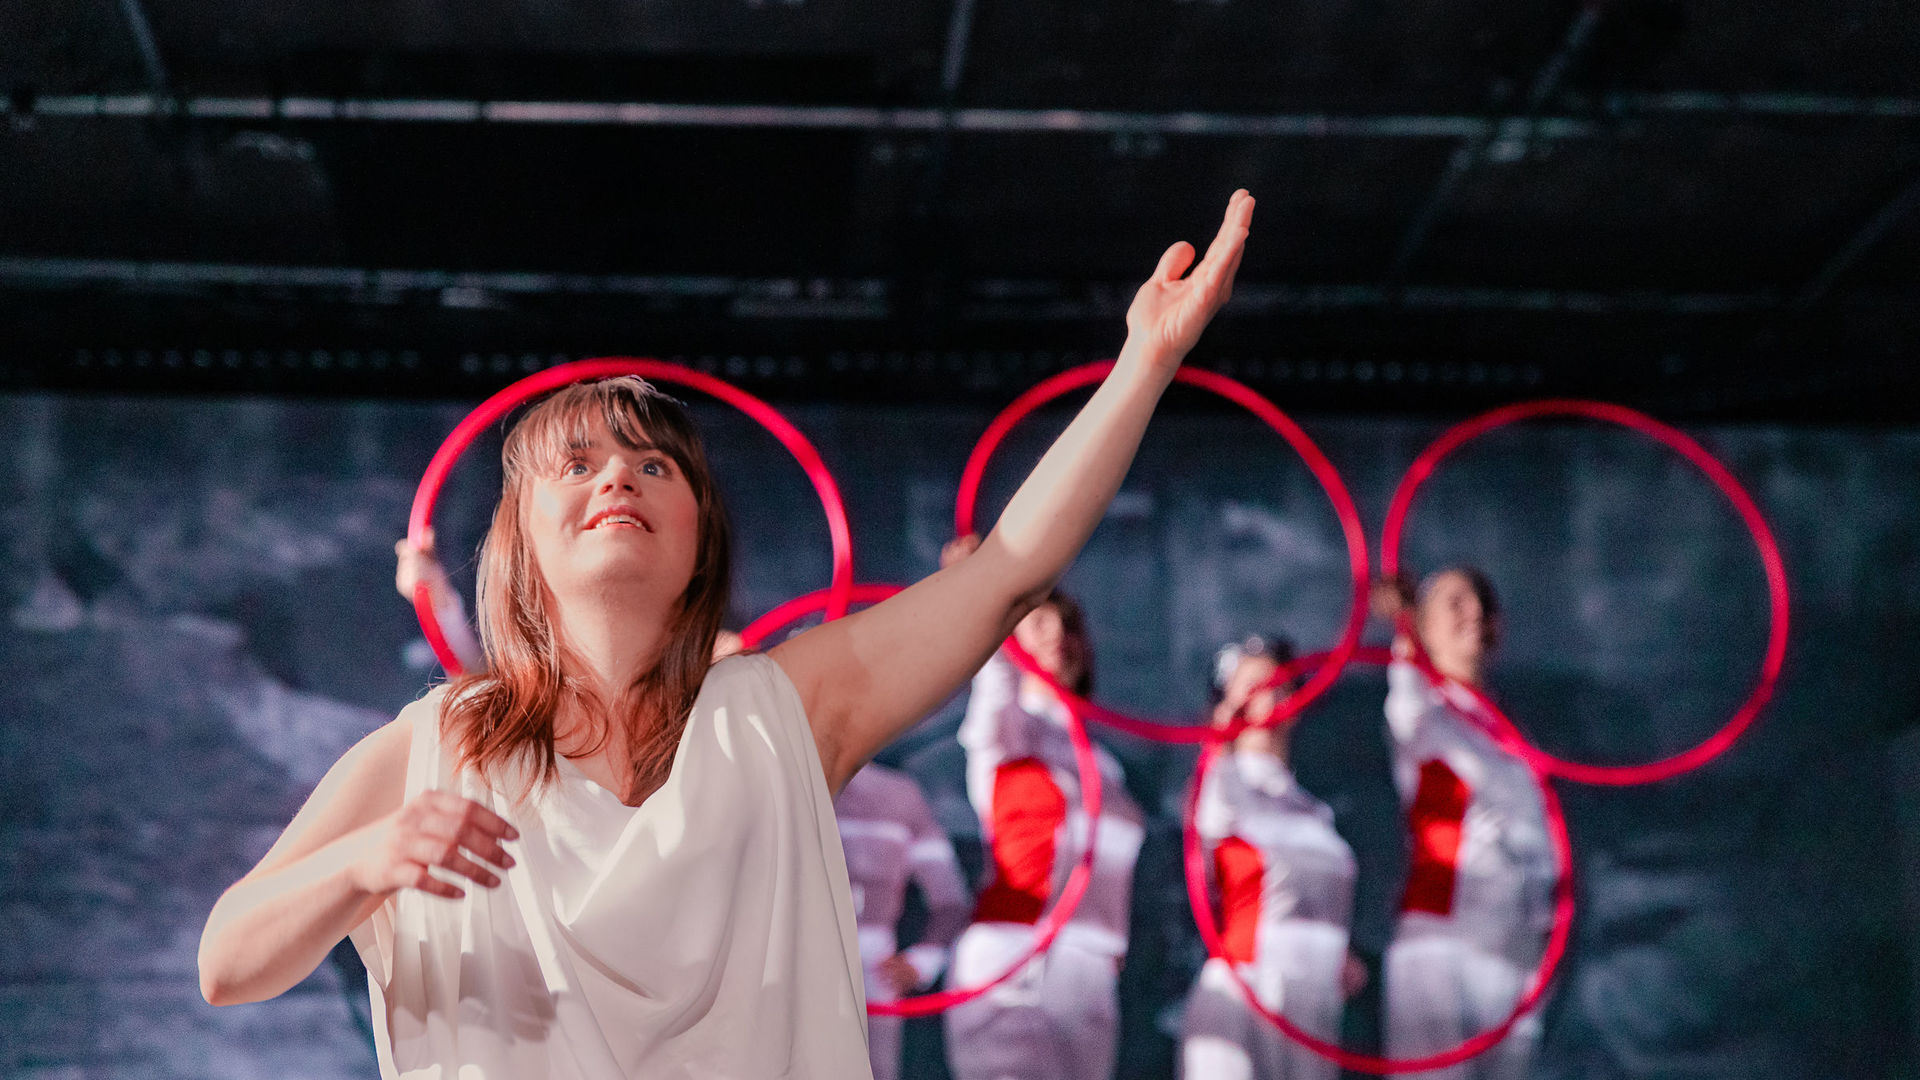 Schauspielerin Juliana Götze hebt ihren linken Arm und schaut lächelnd zur Decke. Im Hintergrund formen die 5 Chor-Darstellerinnen mit 5 roten Ringen das Emblem der Olympischen Spiele.